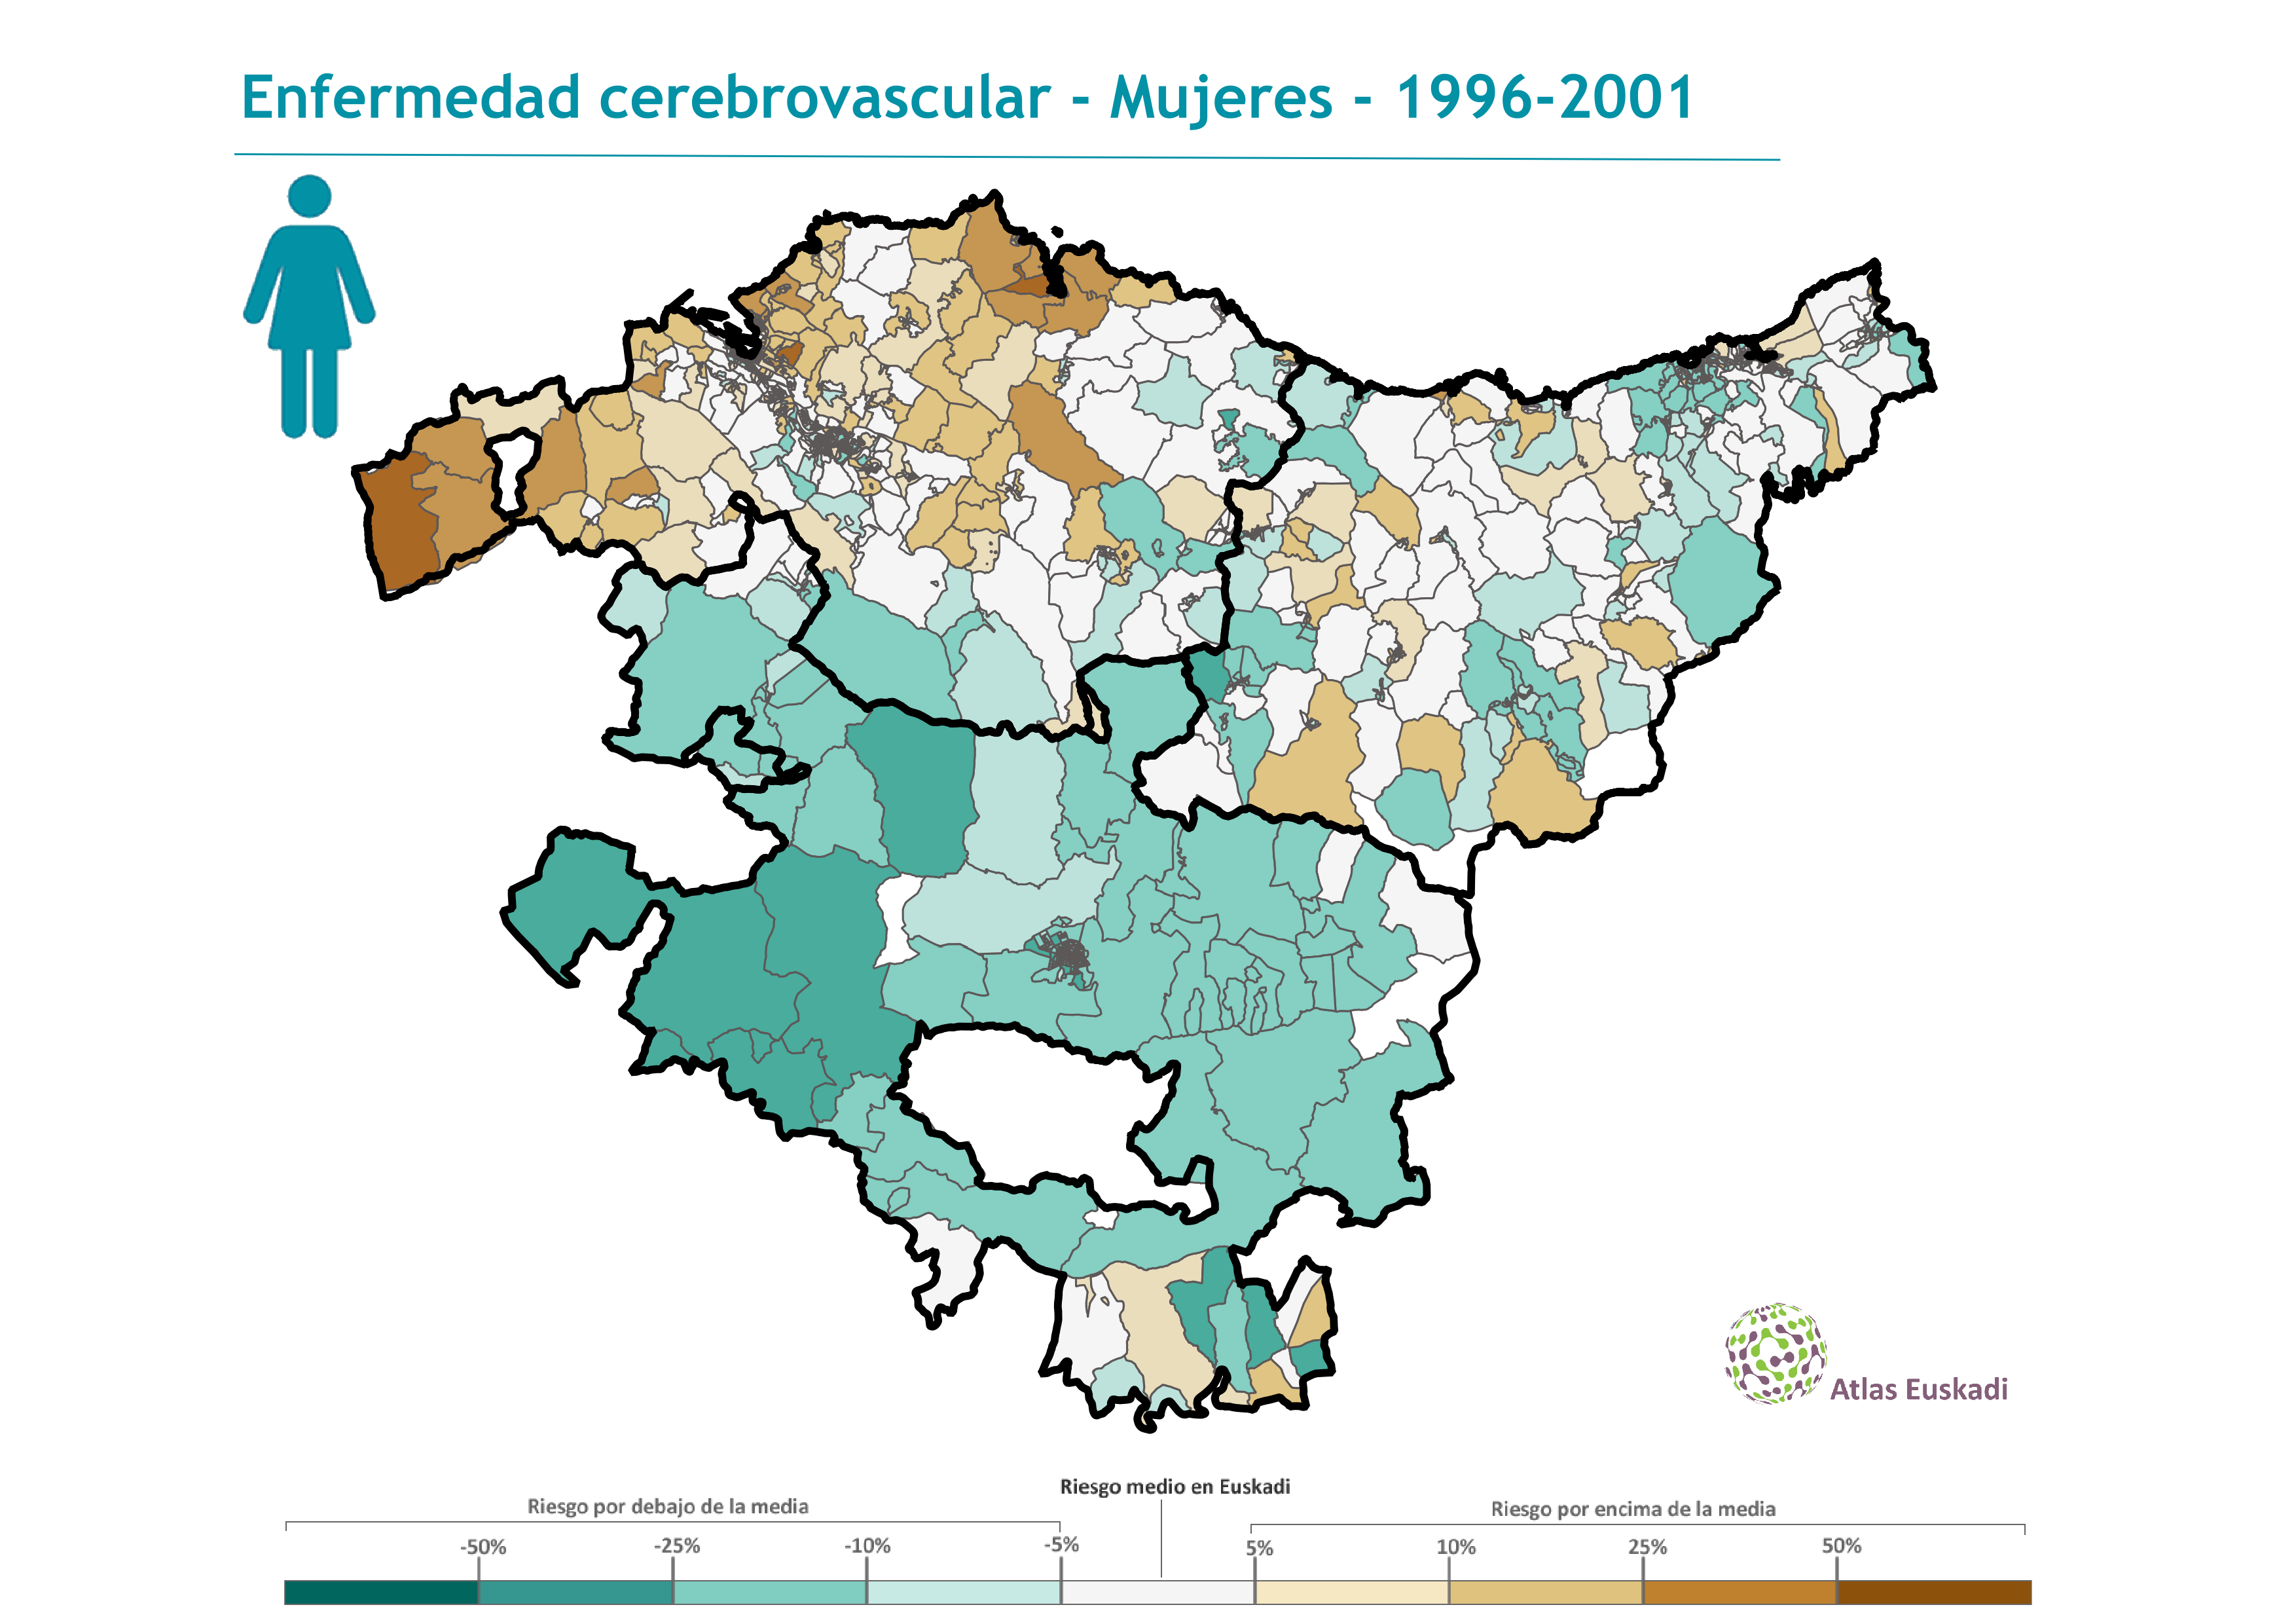 Enfermedad cerebrovascular mujeres  1996-2001 Euskadi